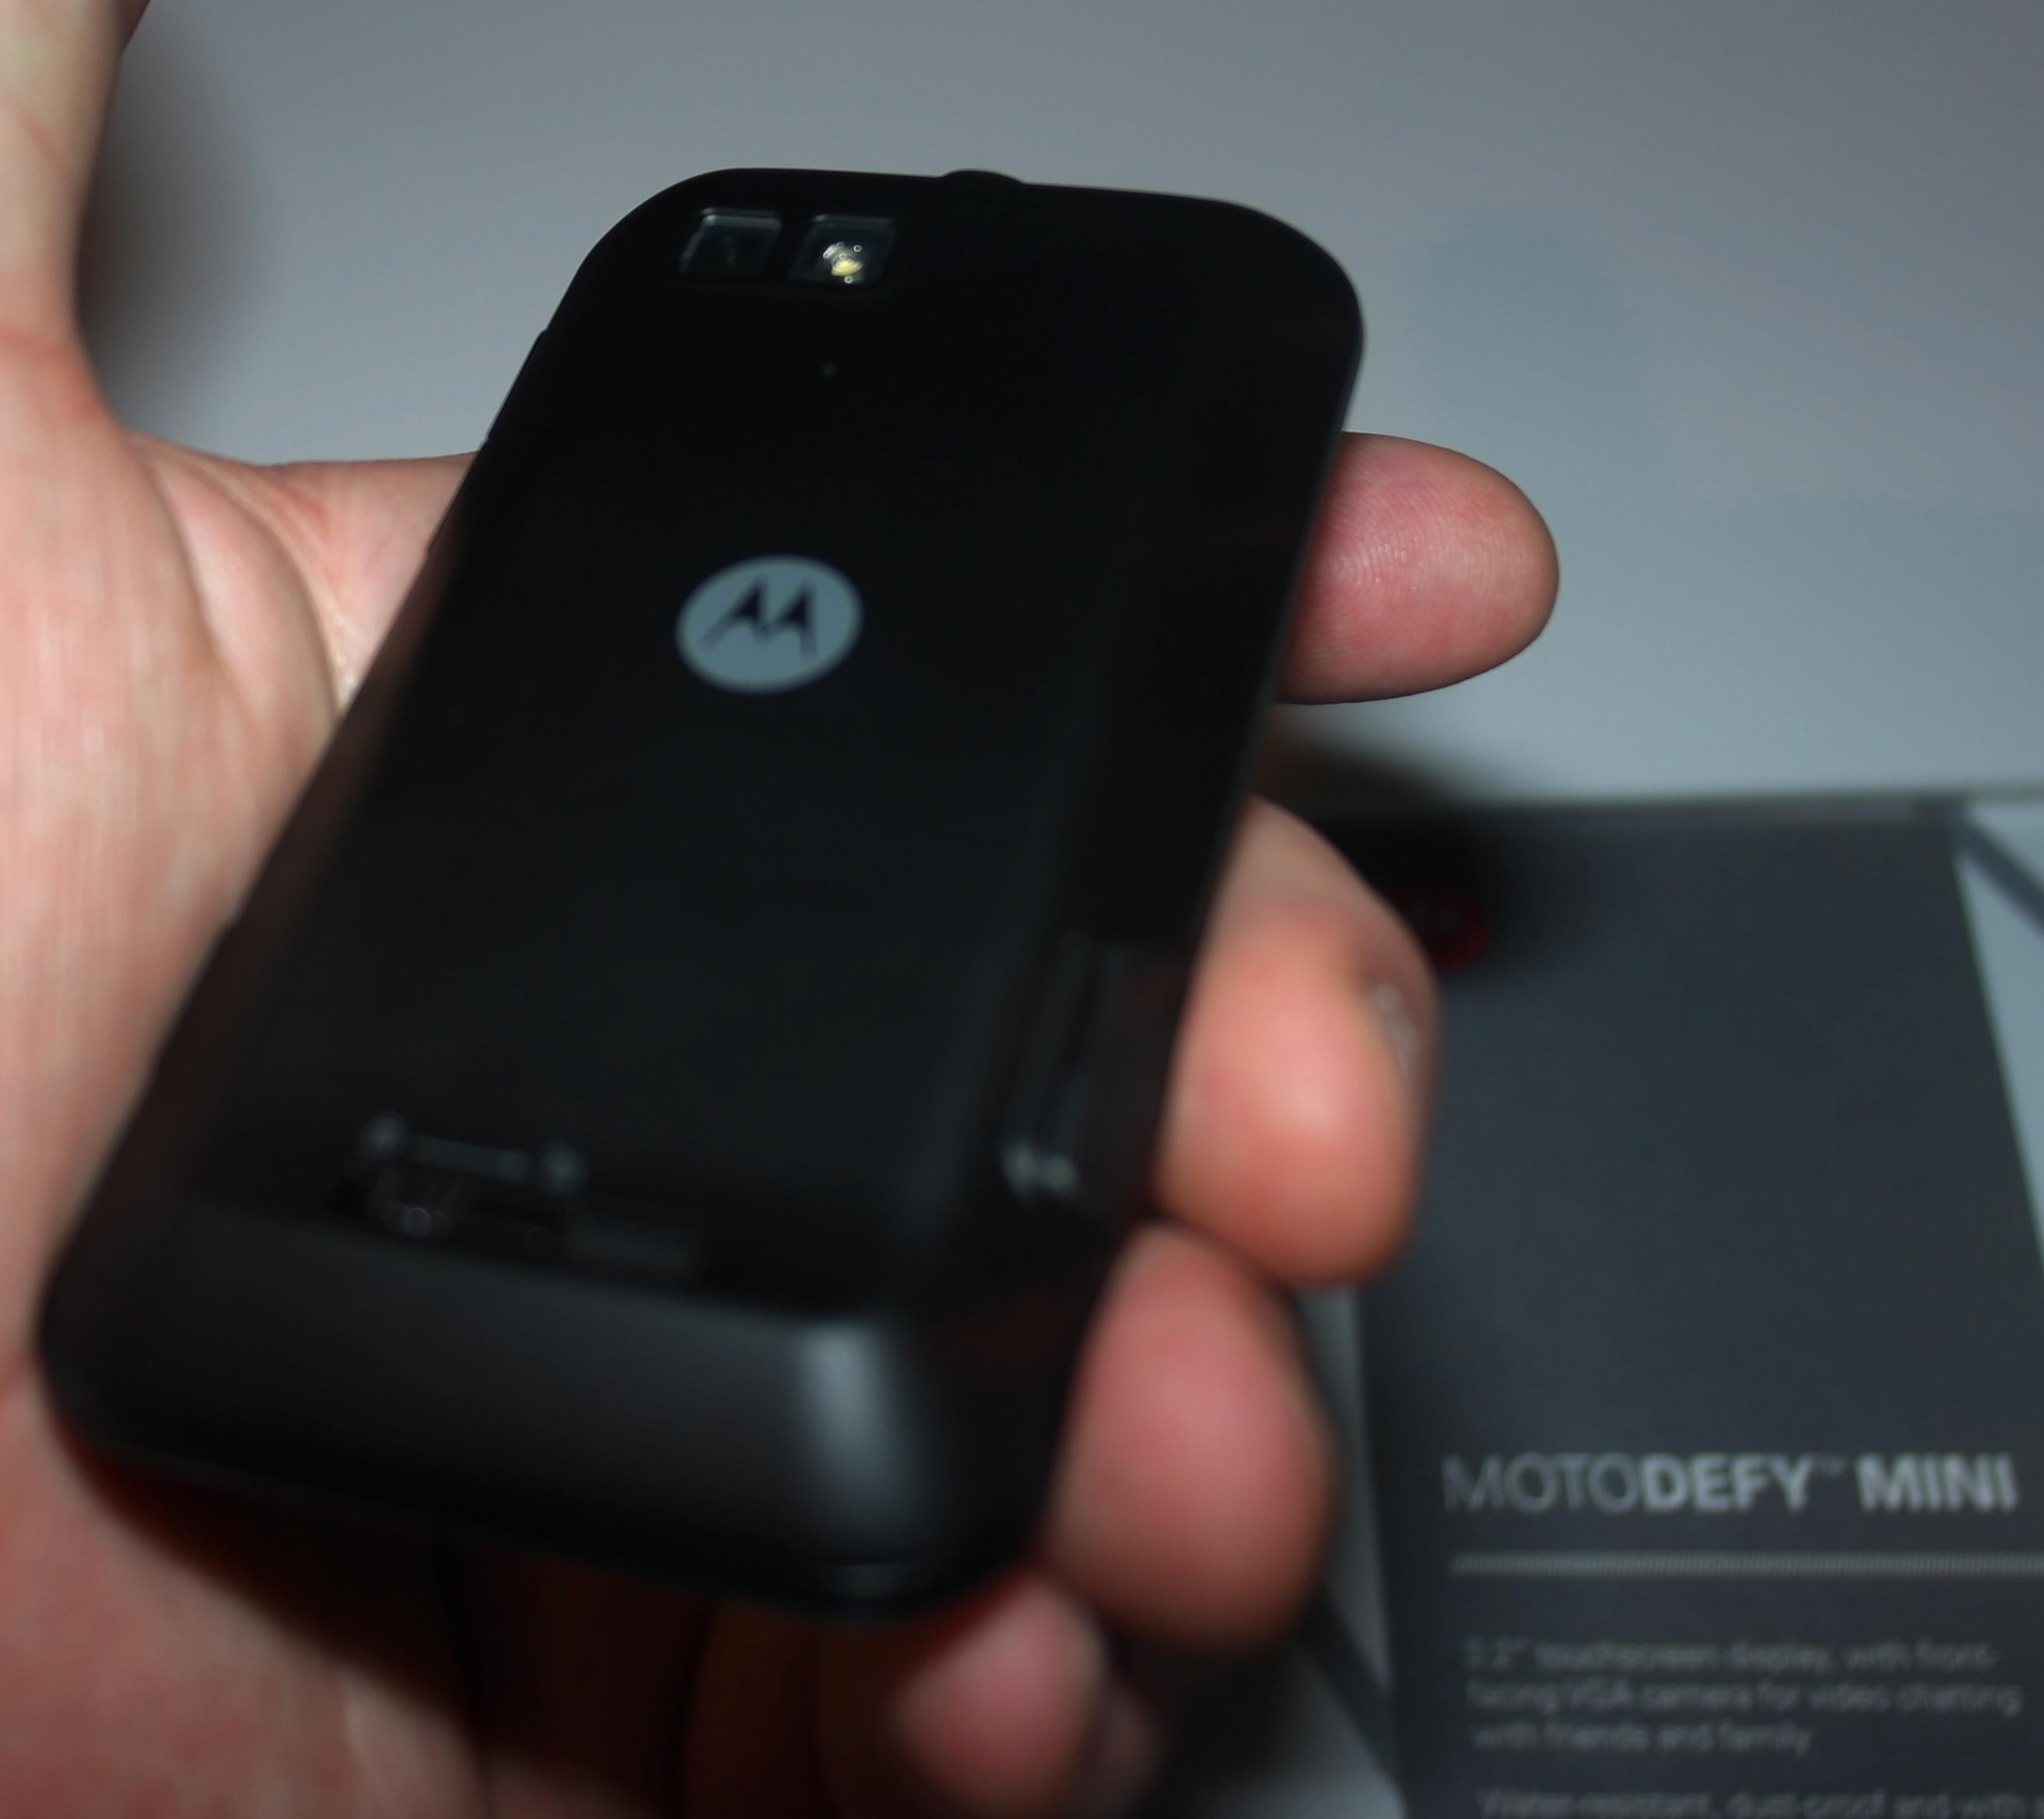 Slik ser baksiden av Motorola Defy ut.